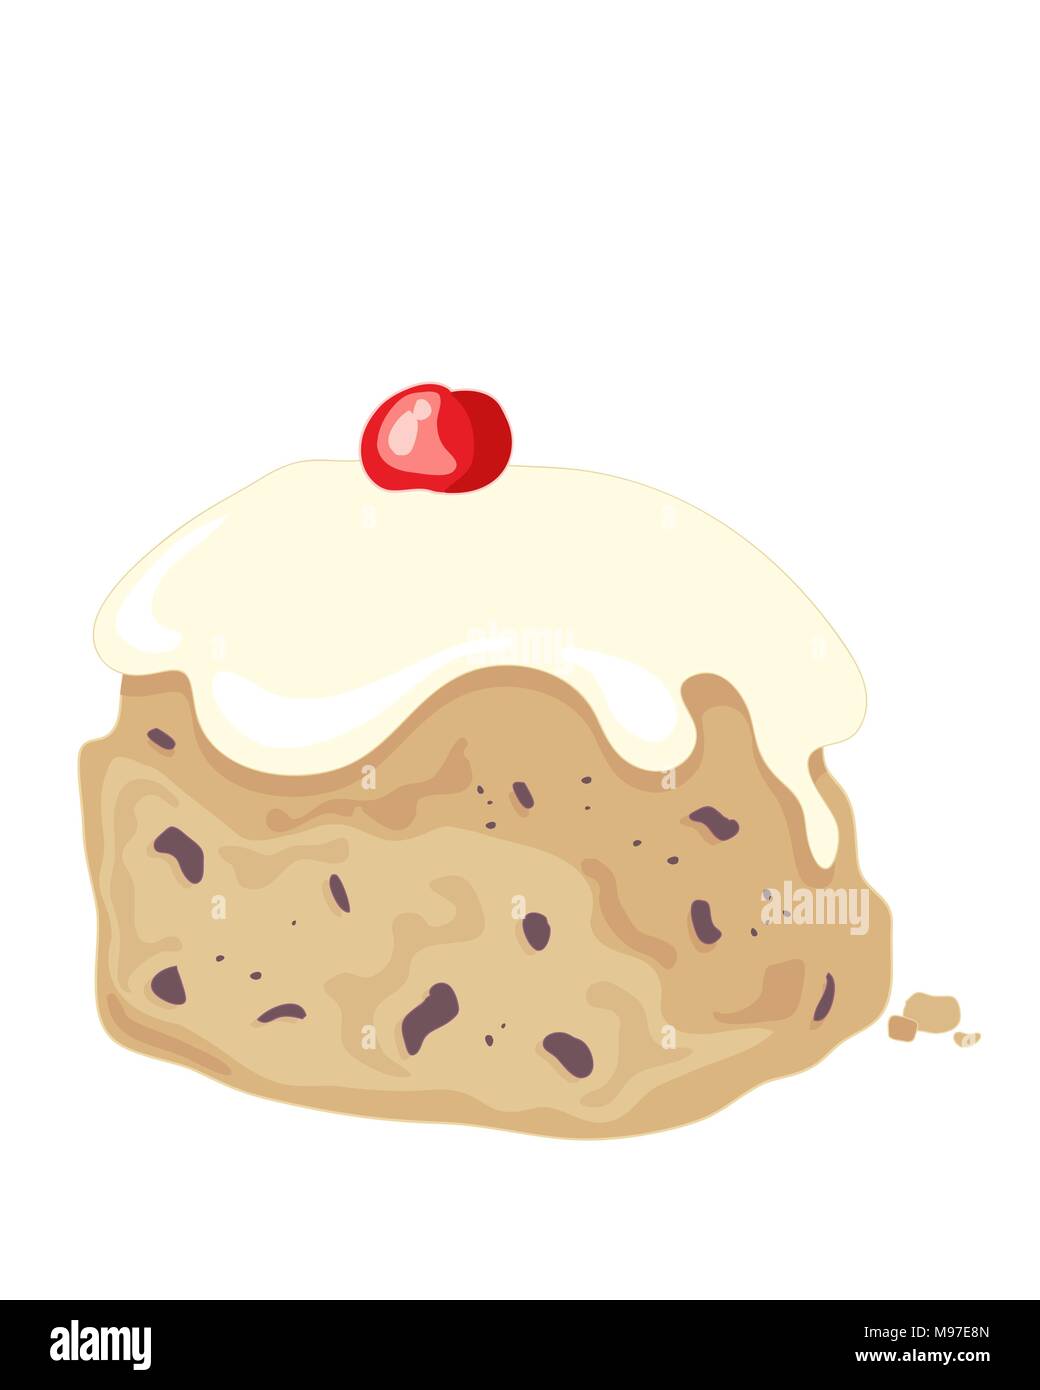 Une illustration d'un délicieux pain cuit glacé fruité avec des raisins secs et surmonté d'un glaçage blanc crème et glace cherry pour la décoration Illustration de Vecteur